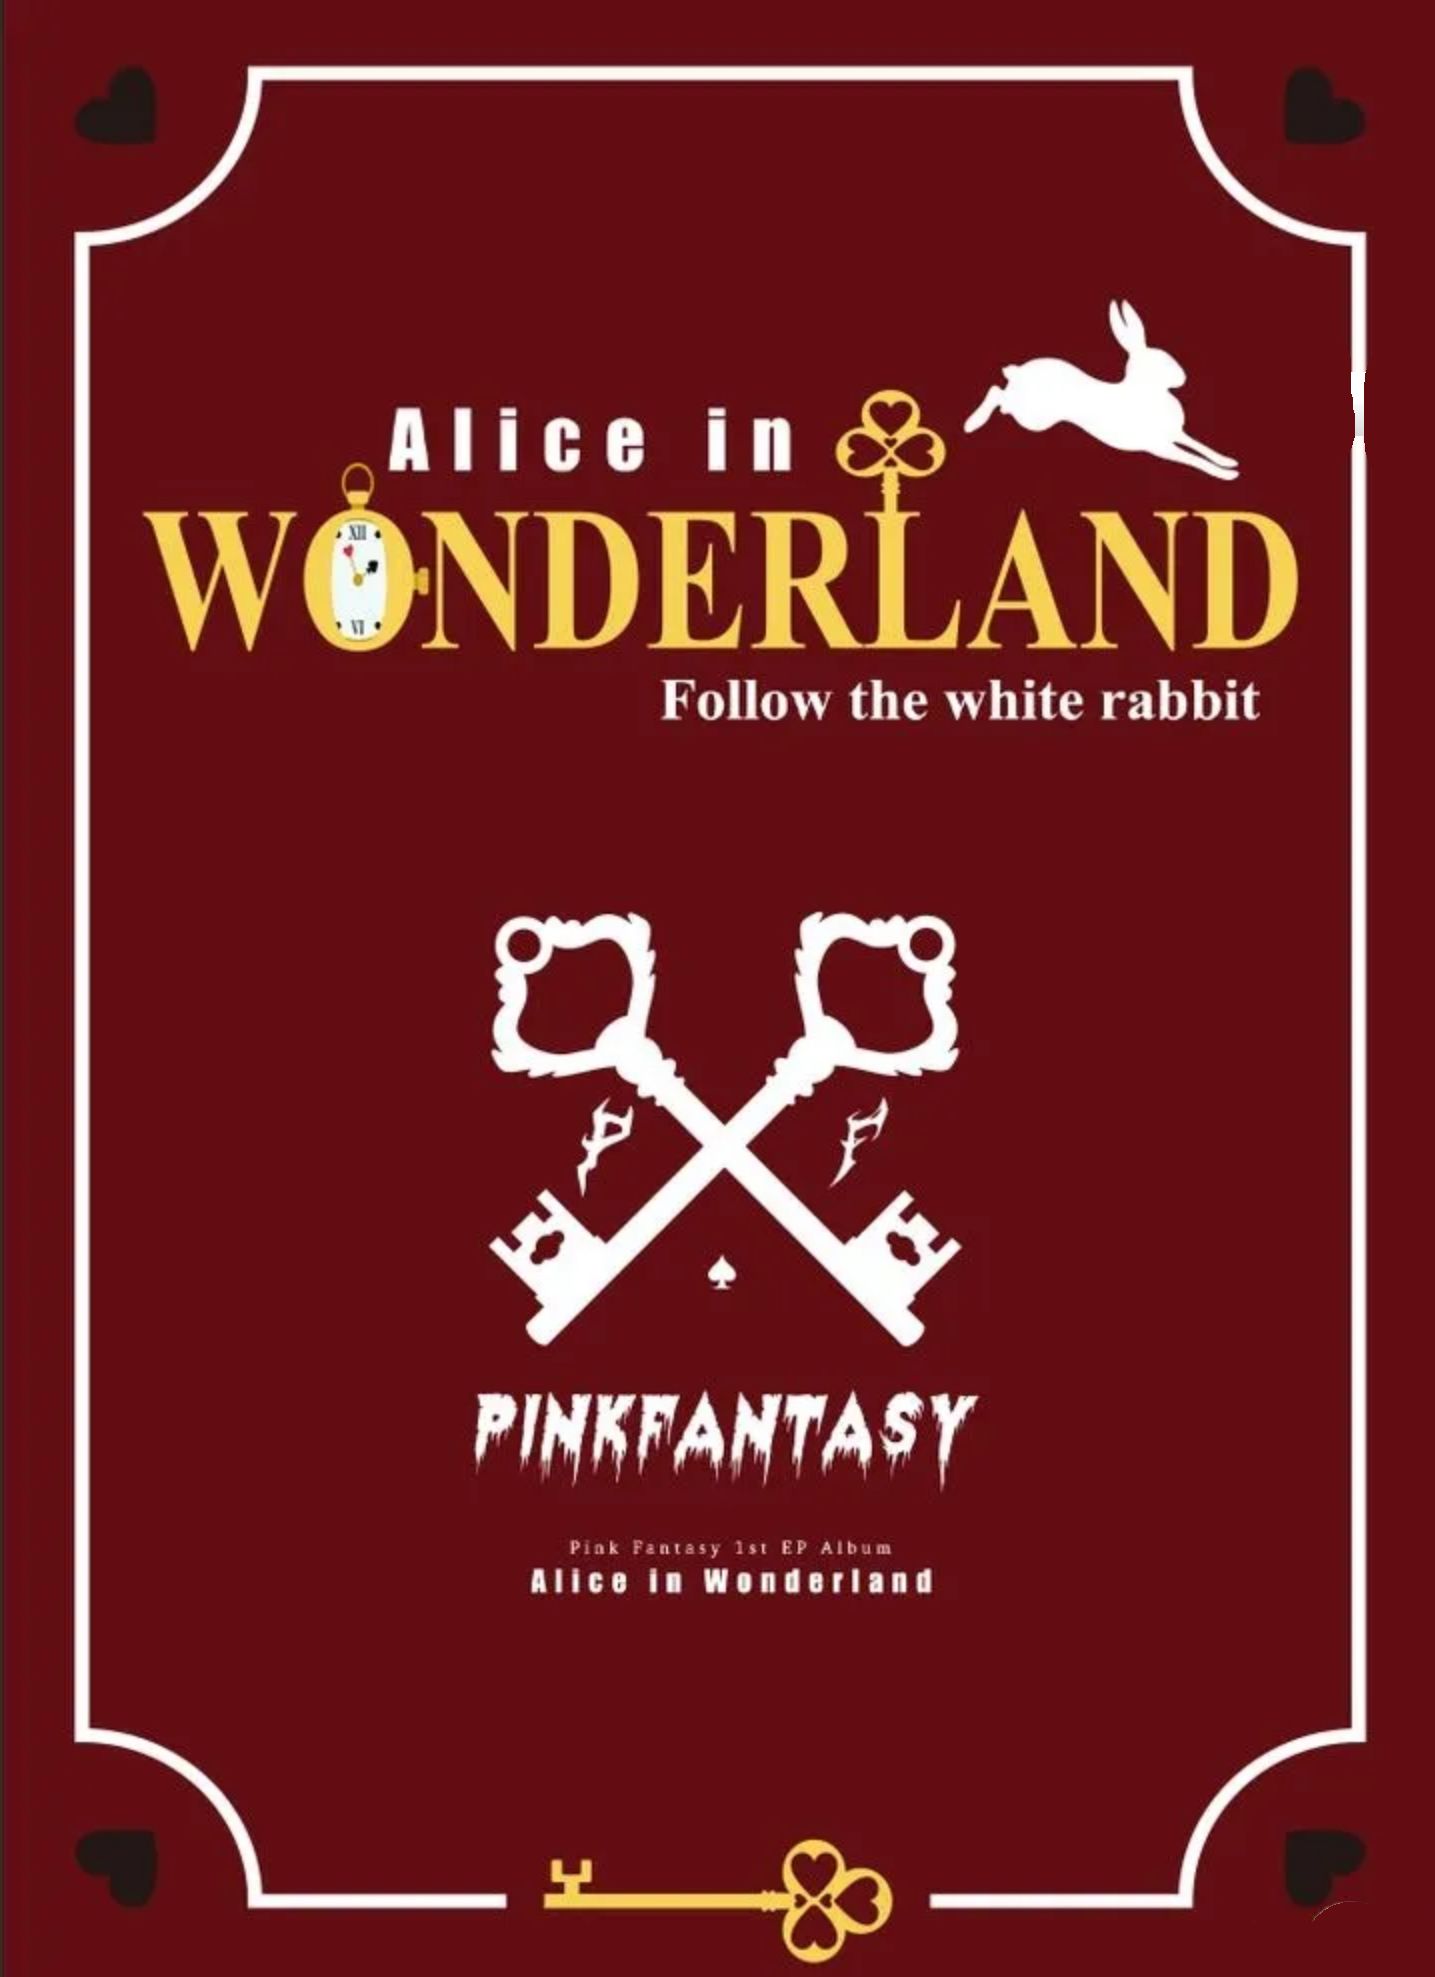 Alice in Wonderland (Wonderland version)